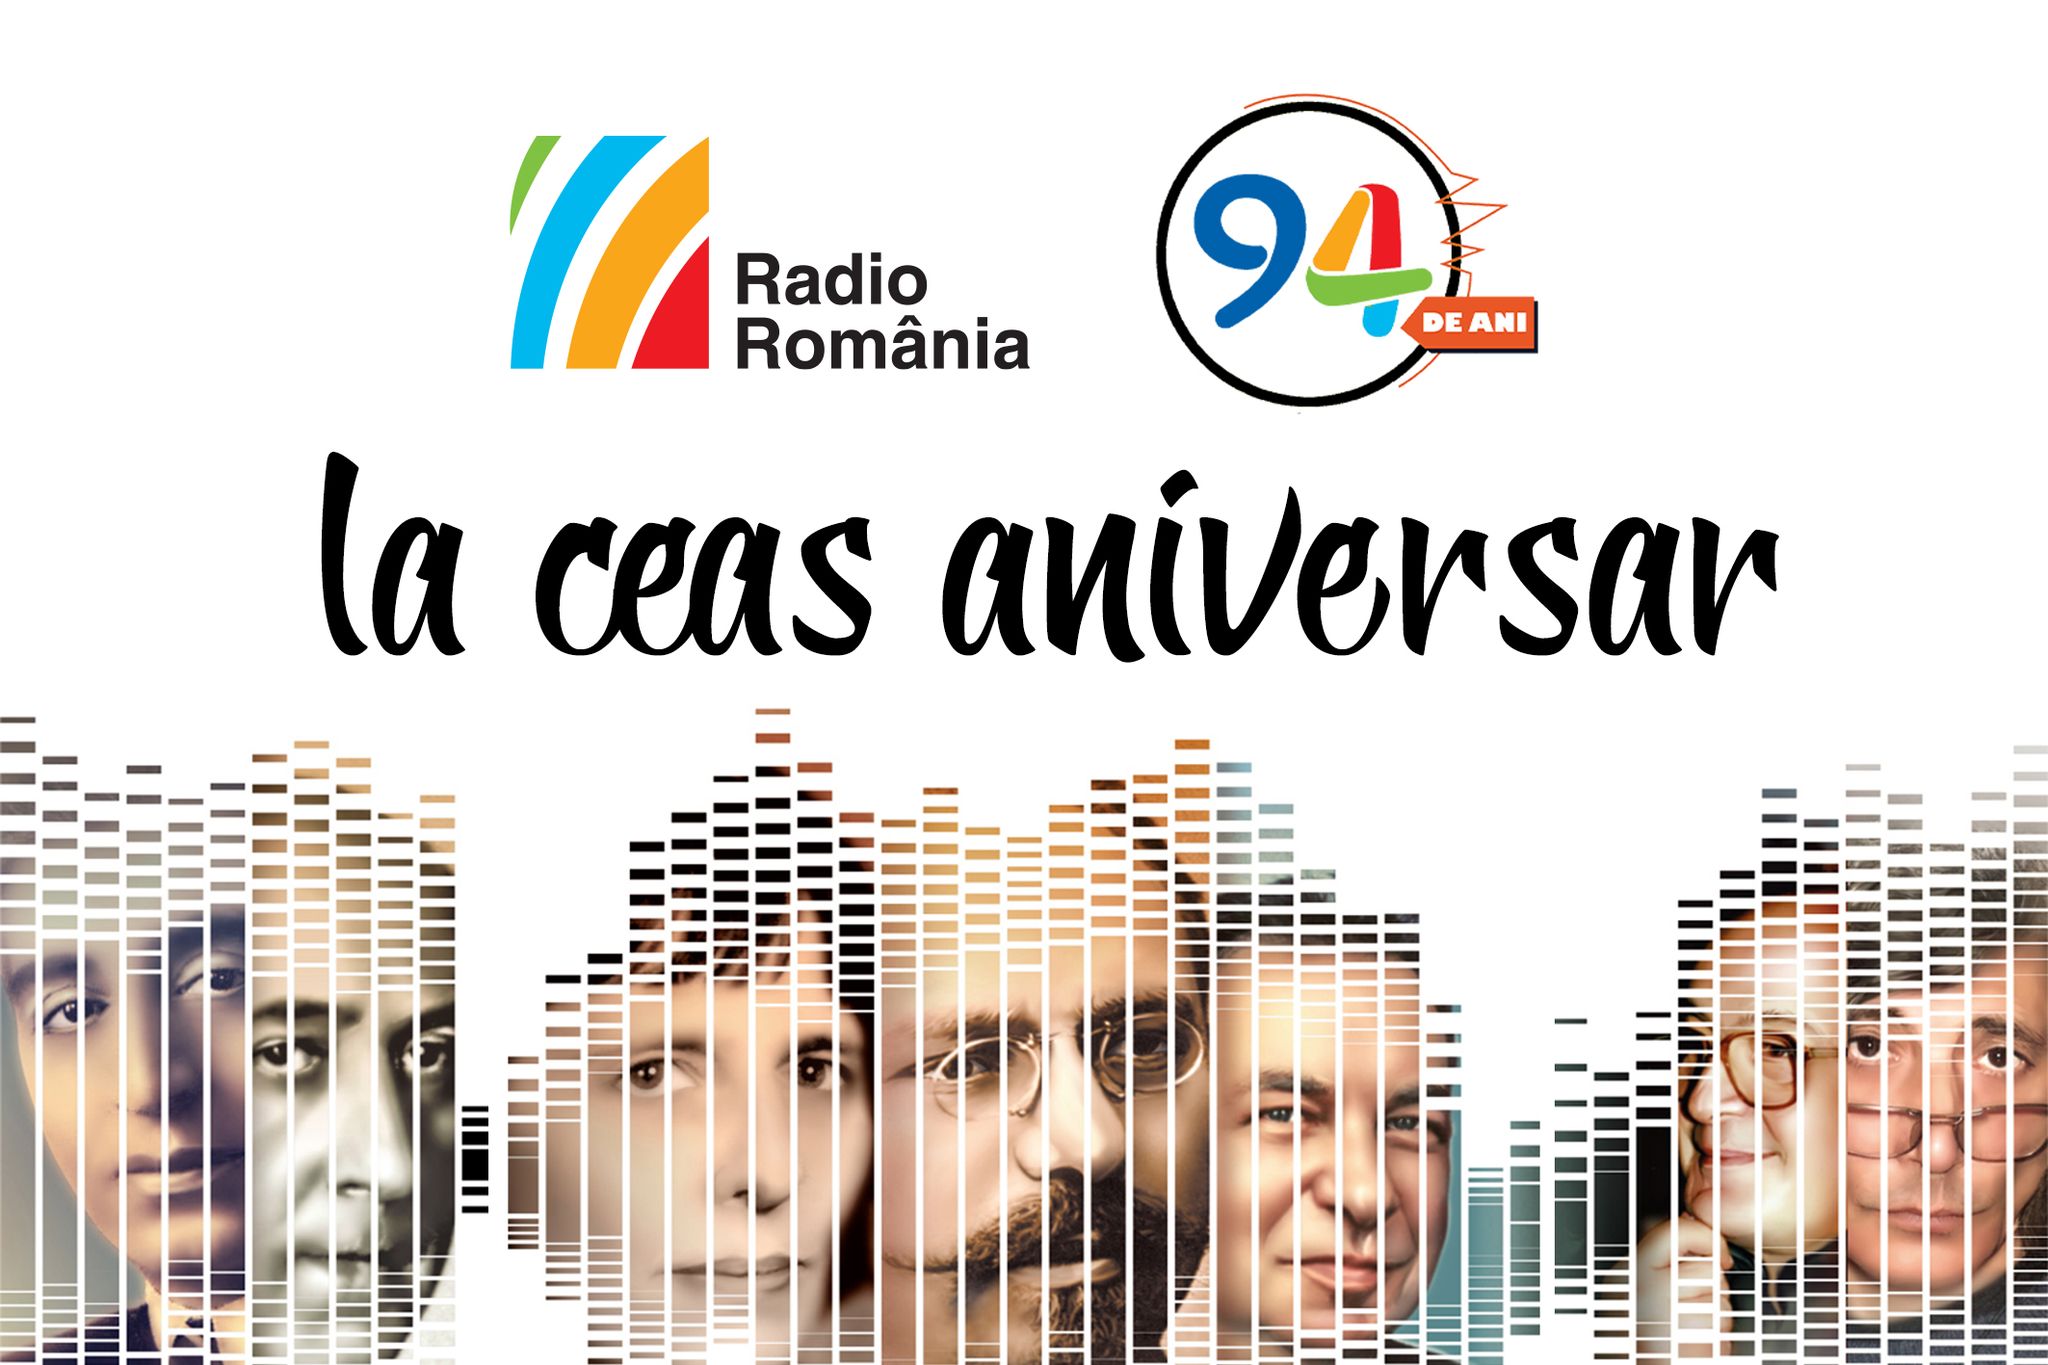 Radio România, de 94 de ani împreună cu dumneavoastră